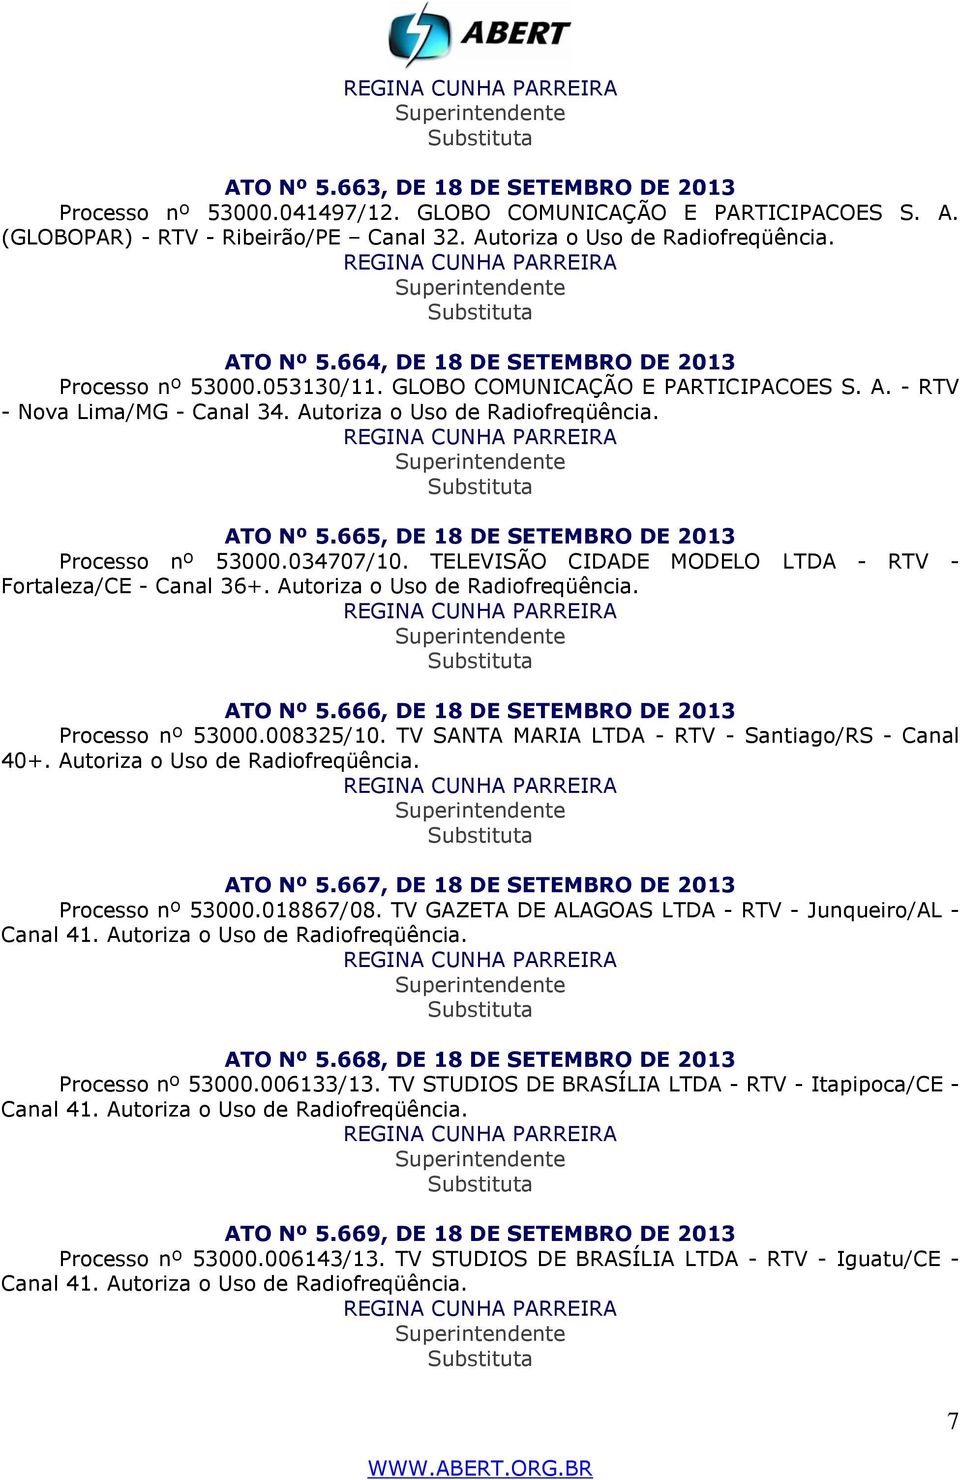 665, DE 18 DE SETEMBRO DE 2013 Processo nº 53000.034707/10. TELEVISÃO CIDADE MODELO LTDA - RTV - Fortaleza/CE - Canal 36+. Autoriza o Uso de Radiofreqüência. ATO Nº 5.